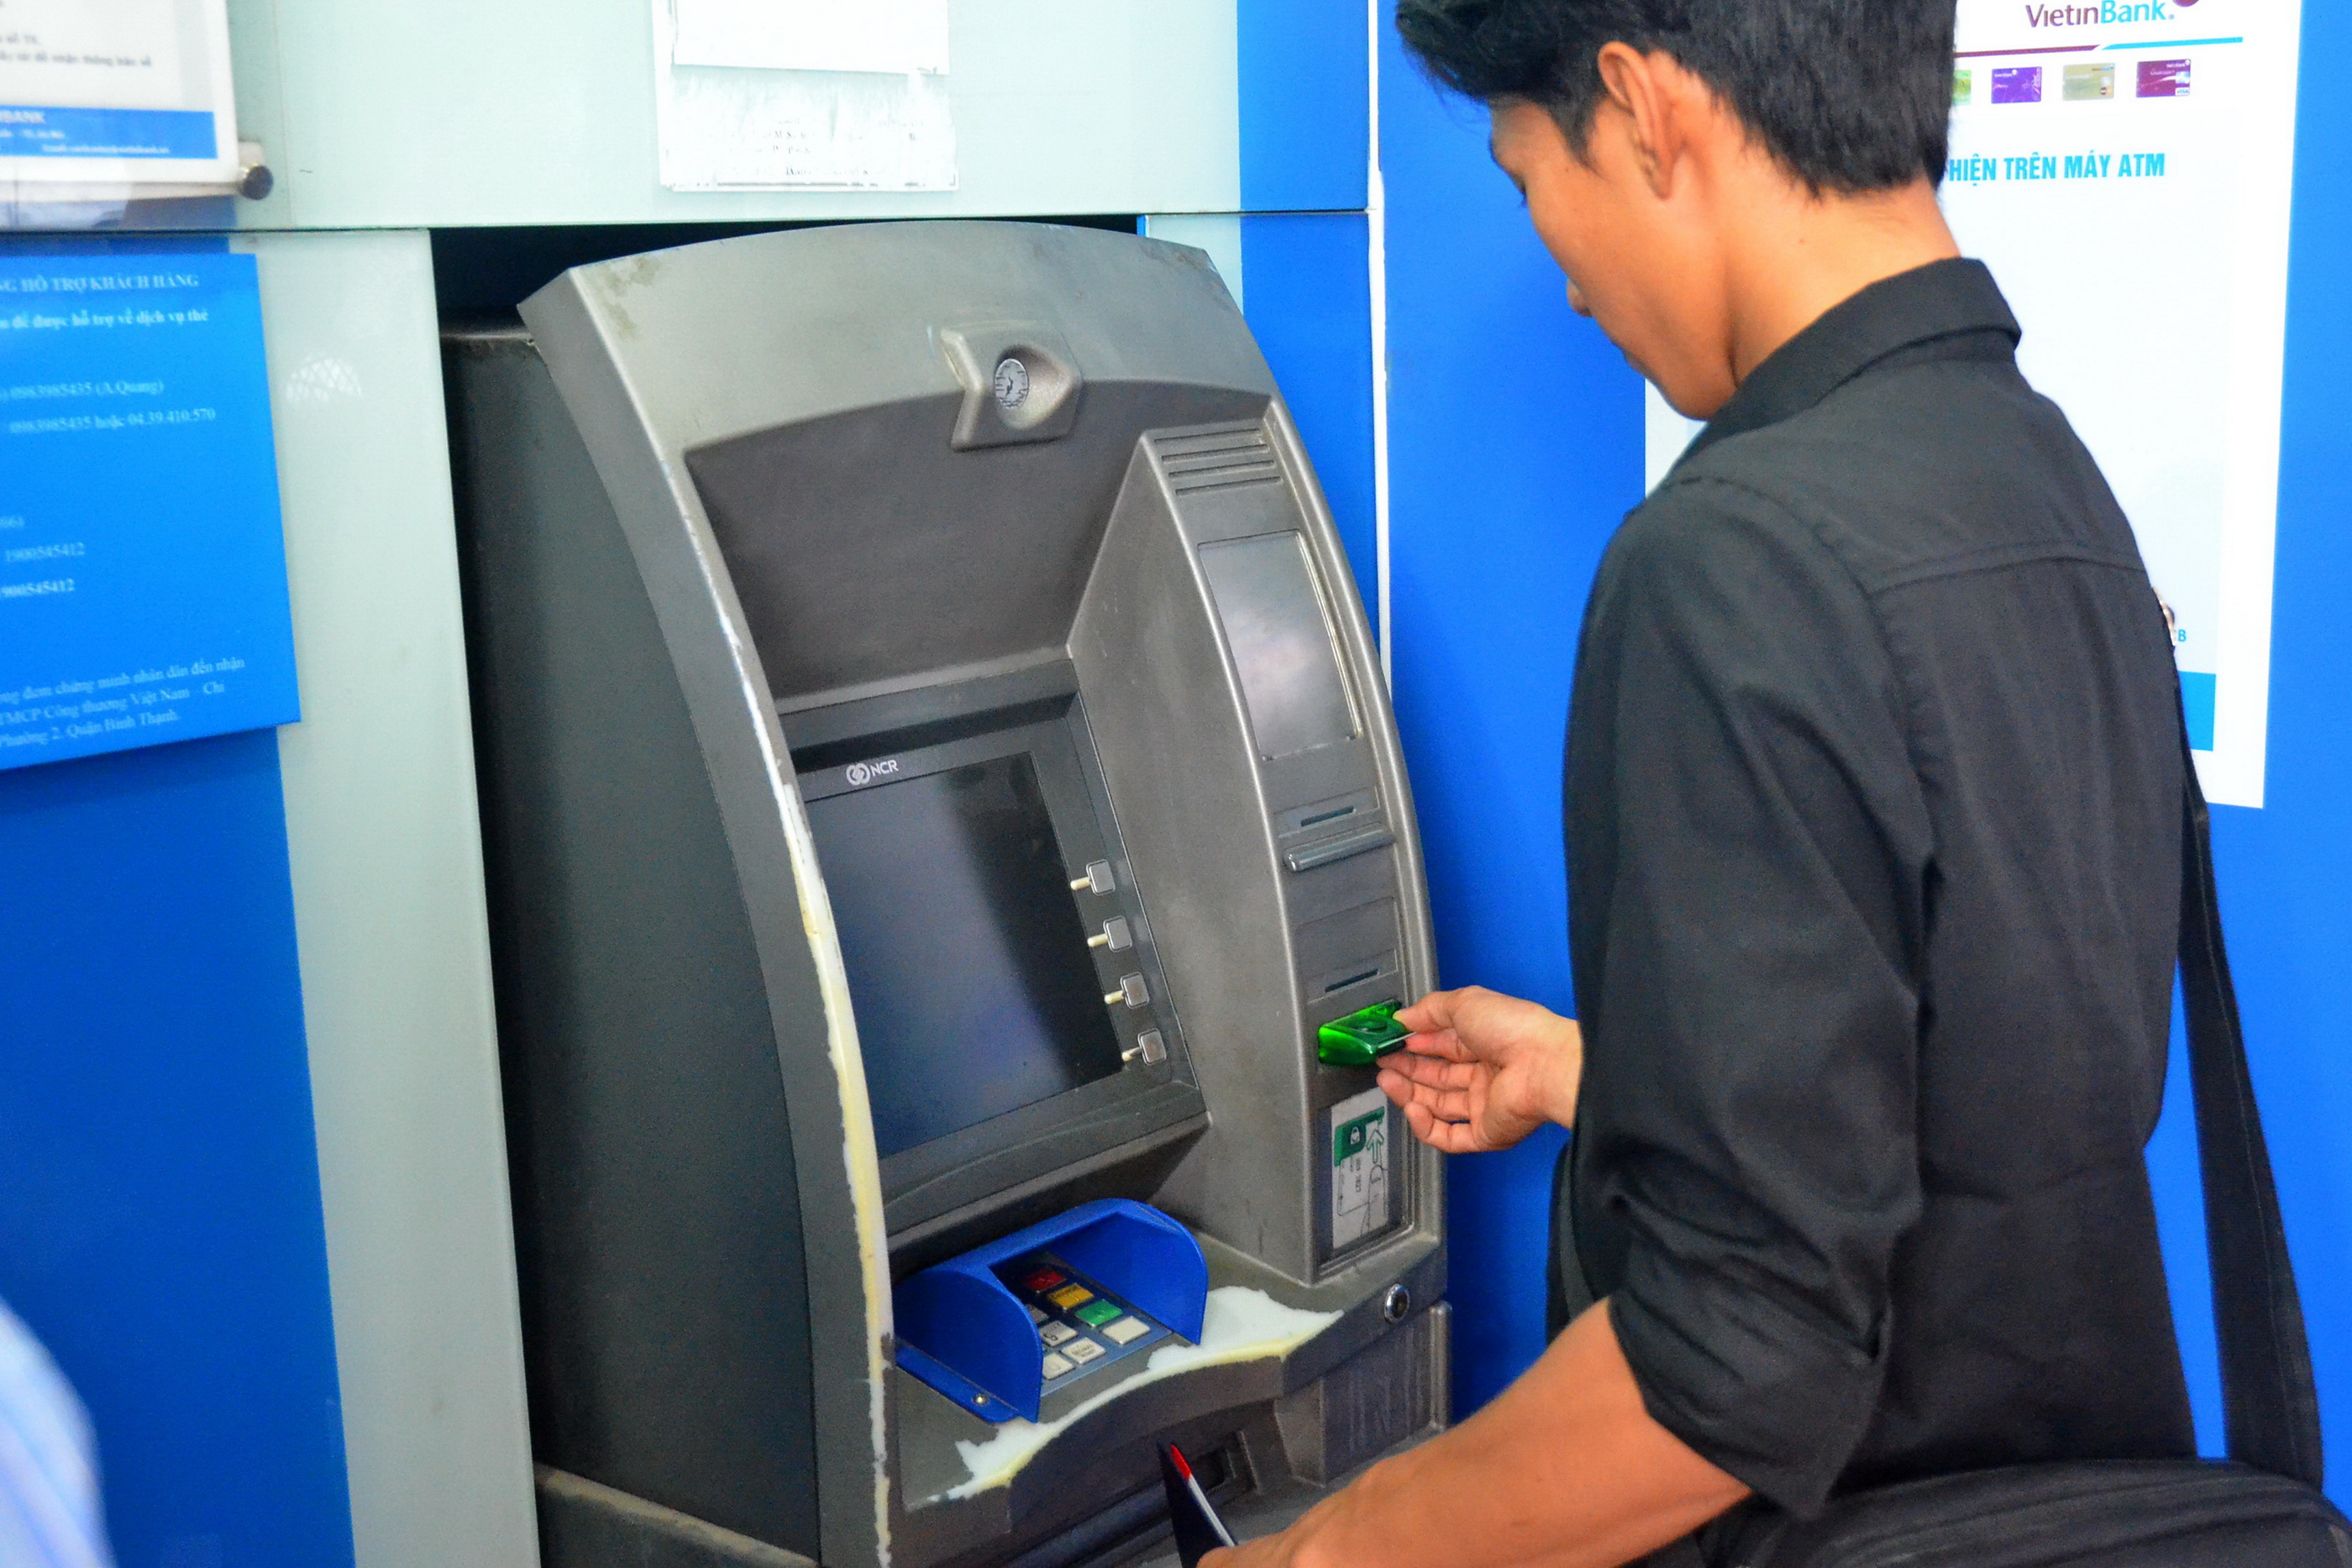 ATM là một trong những cách thông dụng để sử dụng tiền mặt và thực hiện các giao dịch tài chính. Với ATM, bạn có thể rút tiền, kiểm tra số dư tài khoản, chuyển tiền và nhiều hơn nữa mà không cần phải đến ngân hàng. Bạn sẽ tìm thấy nhiều thông tin hữu ích về ATM trong ảnh được chia sẻ.